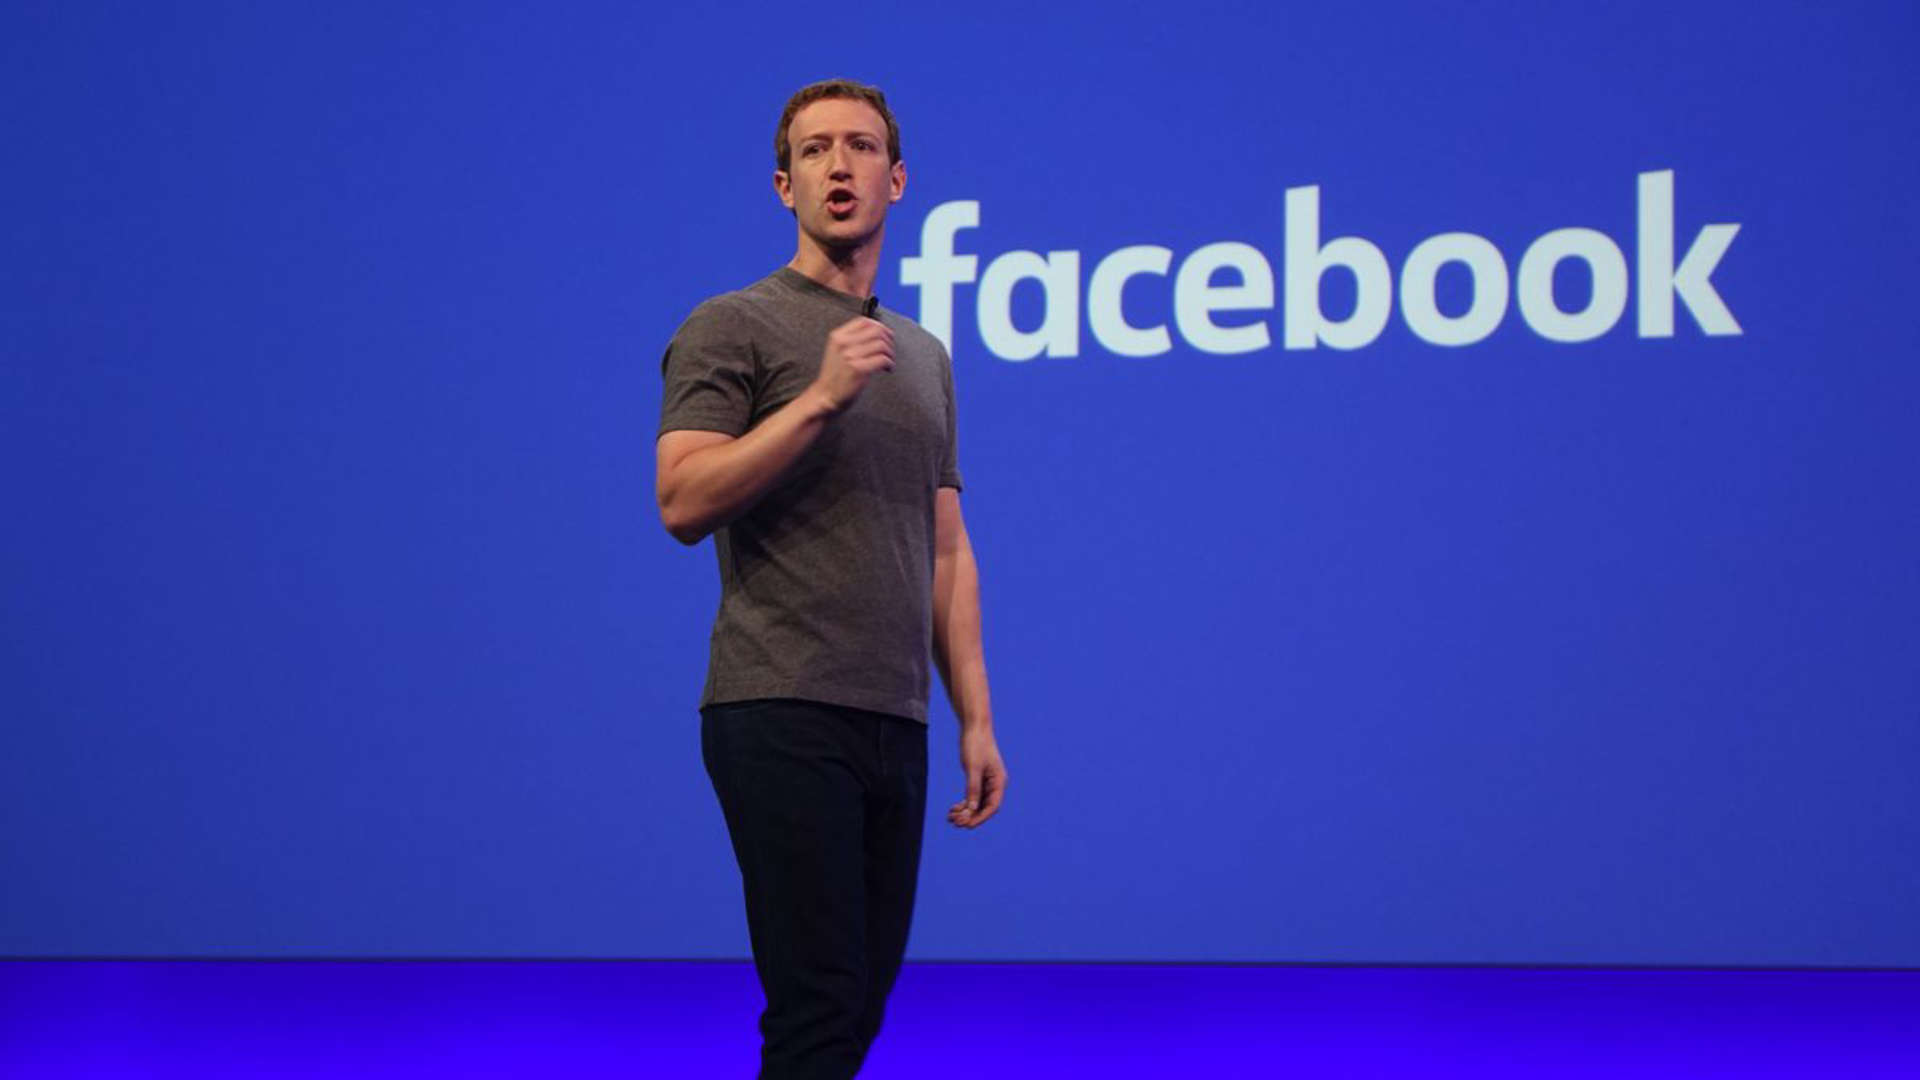 Διακοπή λειτουργίας σε Facebook, Messenger, Instagram: Πόσο κόστισε στον Μ. Ζάκερμπεργκ;